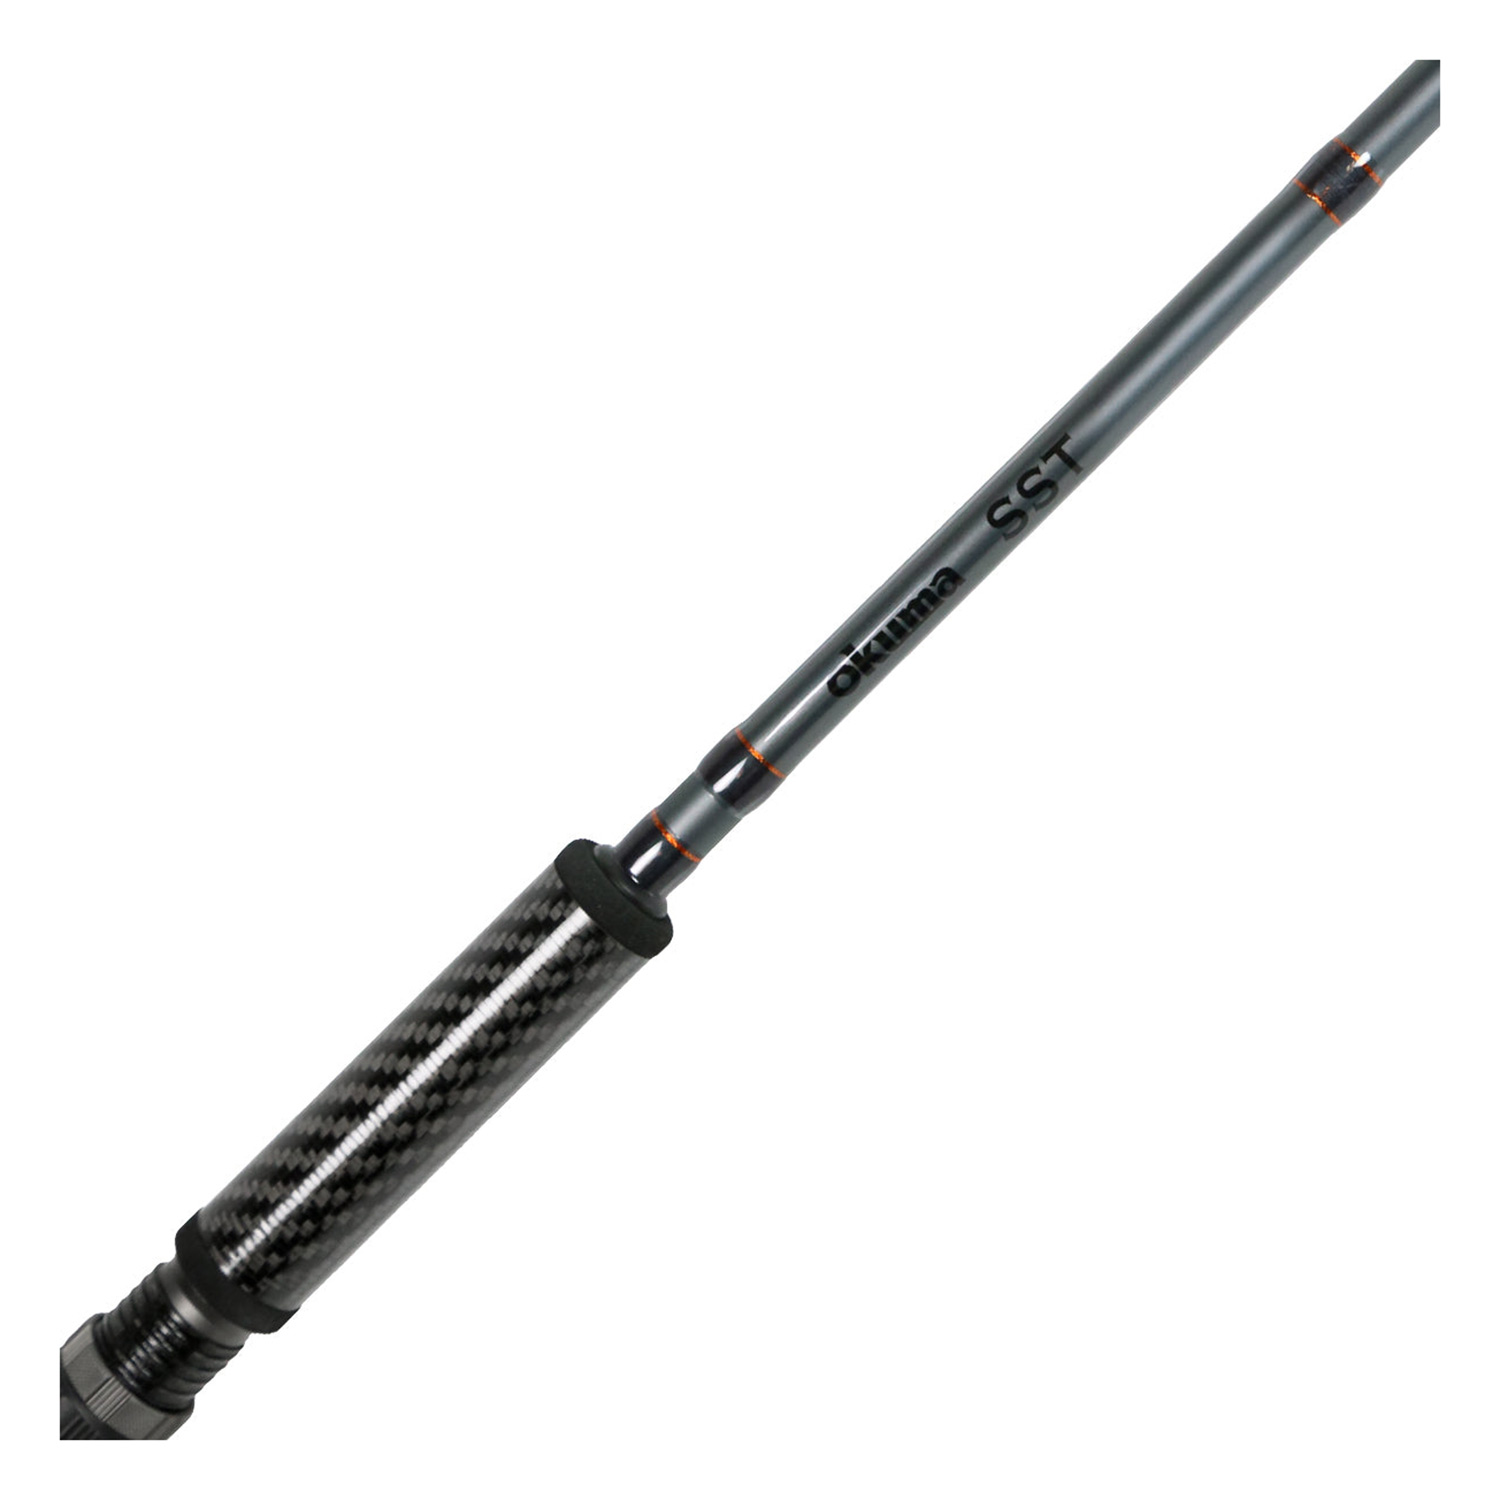 OKUMA 8'6 SST Carbon Grip Baitcasting Rod, Medium Heavy